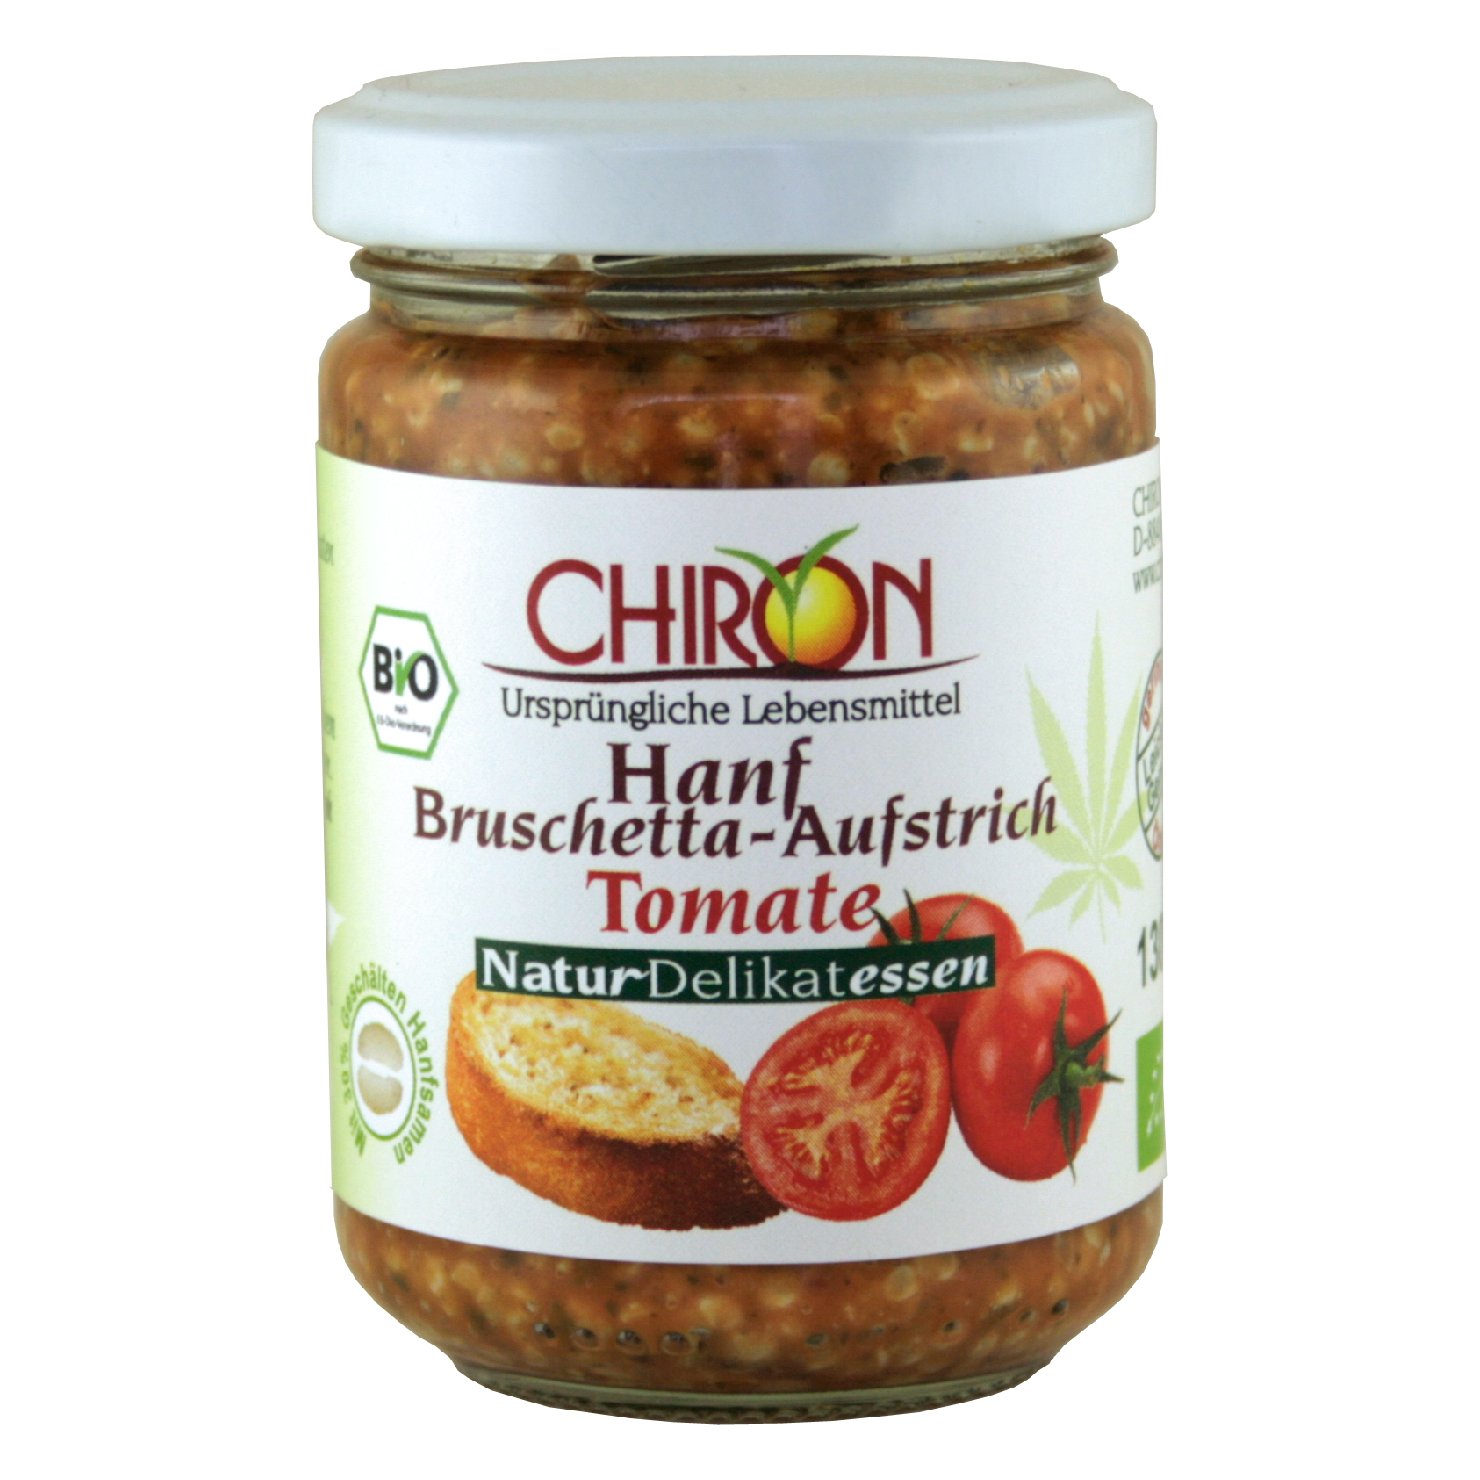 Hanf-Bruschetta-Aufstrich Tomate BIO für 5,60 € im offiziellen Chiron ...